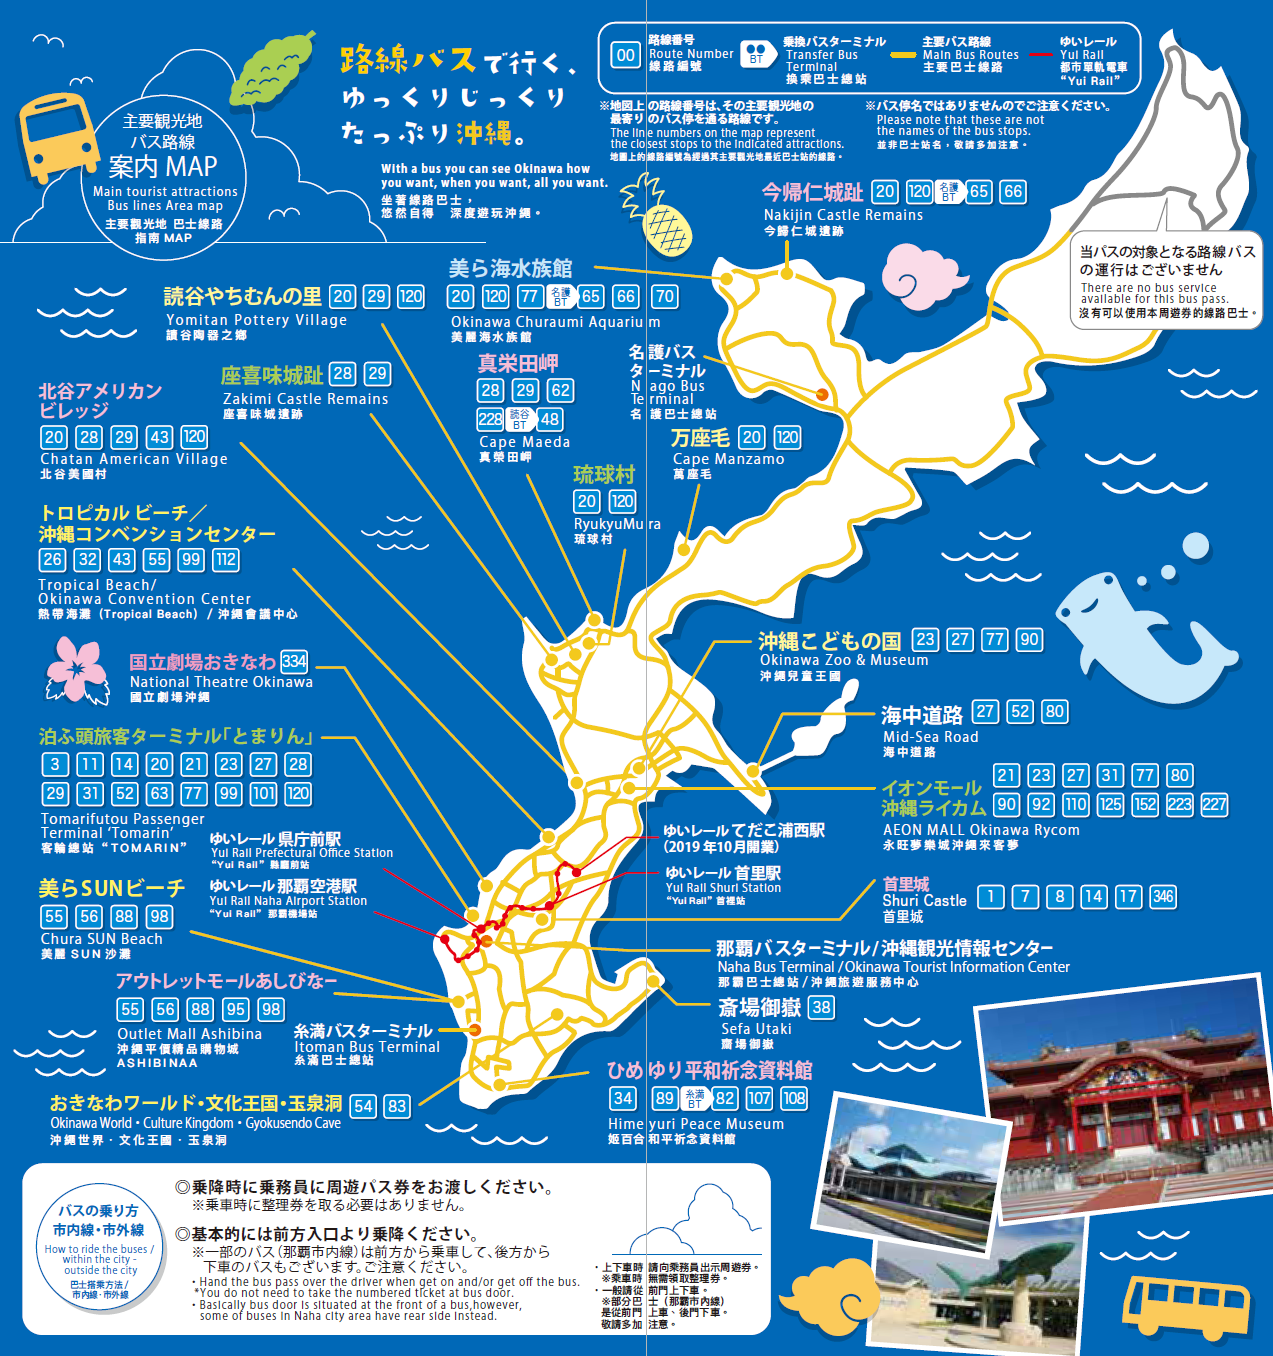 観光地への路線バスマップ。※マップの路線案内は予告なく変更となっている場合がありますので、下記「のりものNAVI Okinawa」等のサイトもしくはバス事業者へお問合せ下さい。